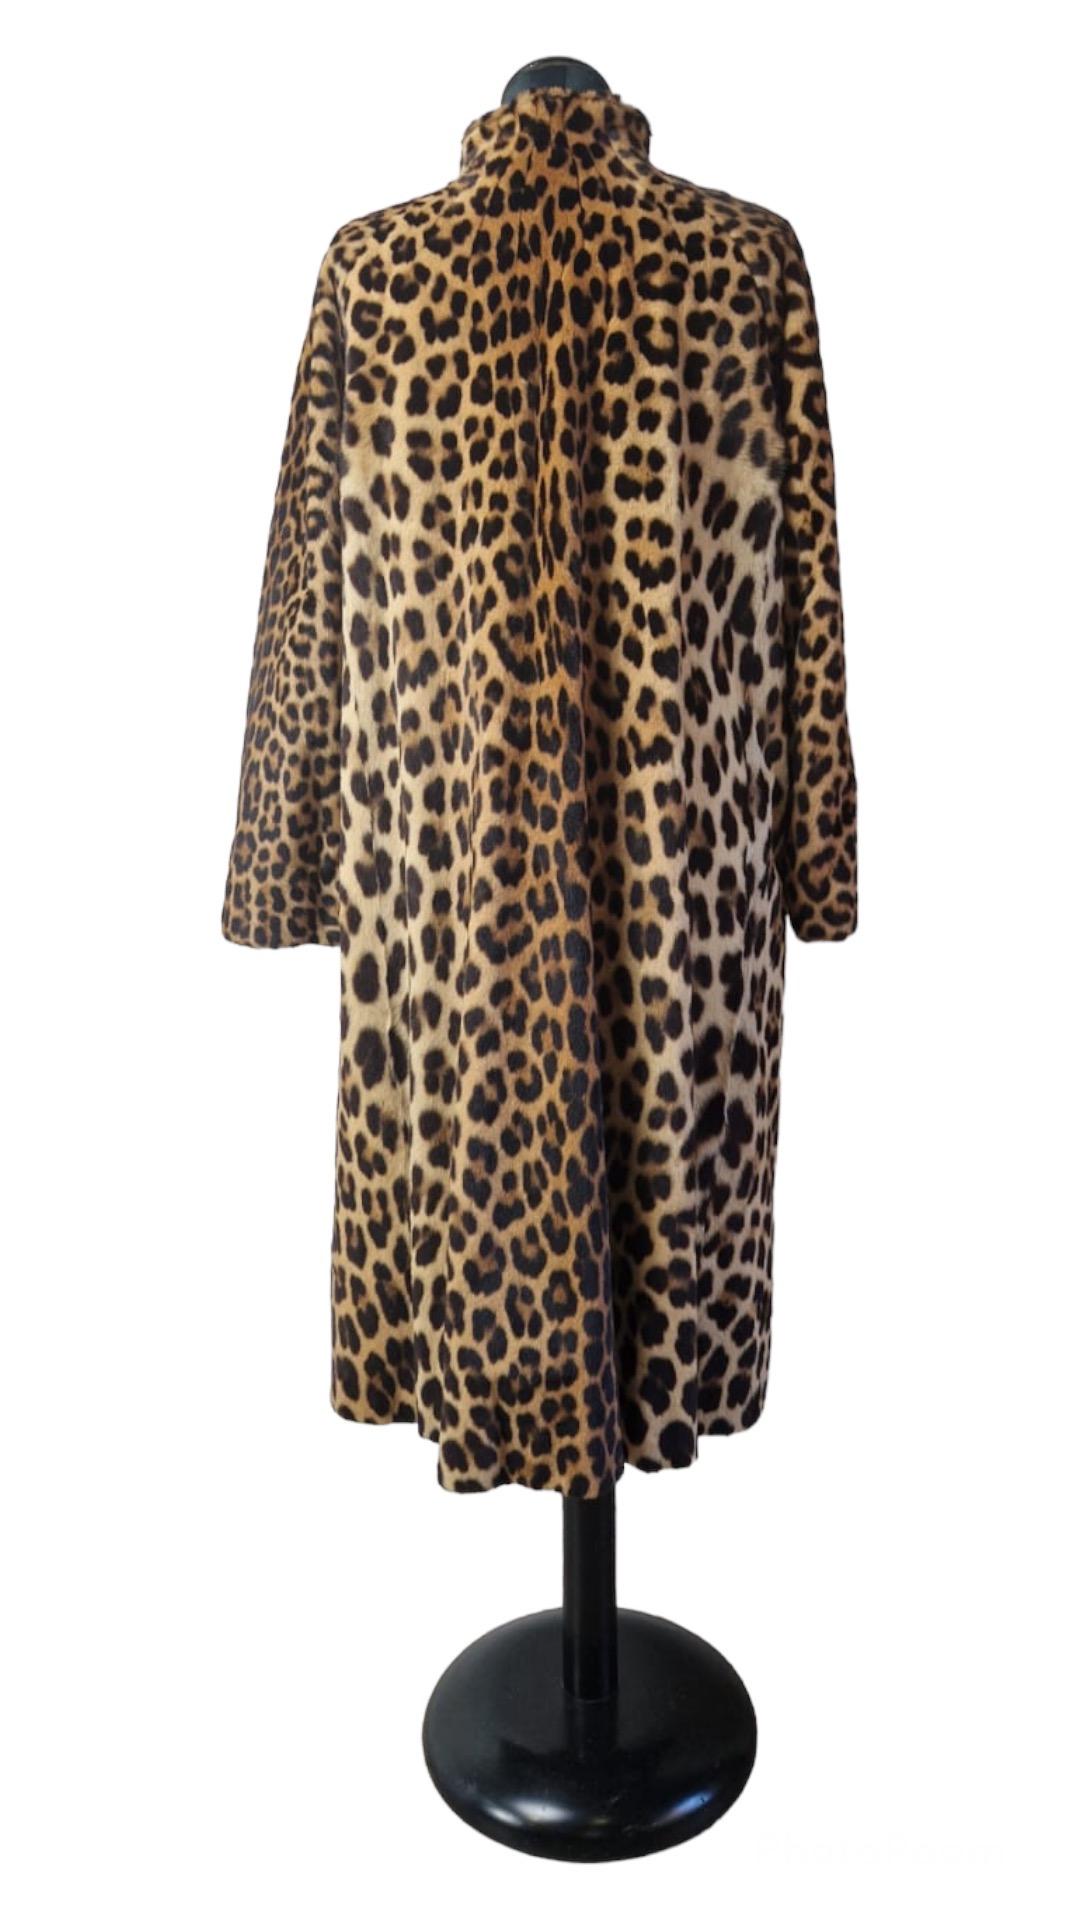 genuine leopard fur coat